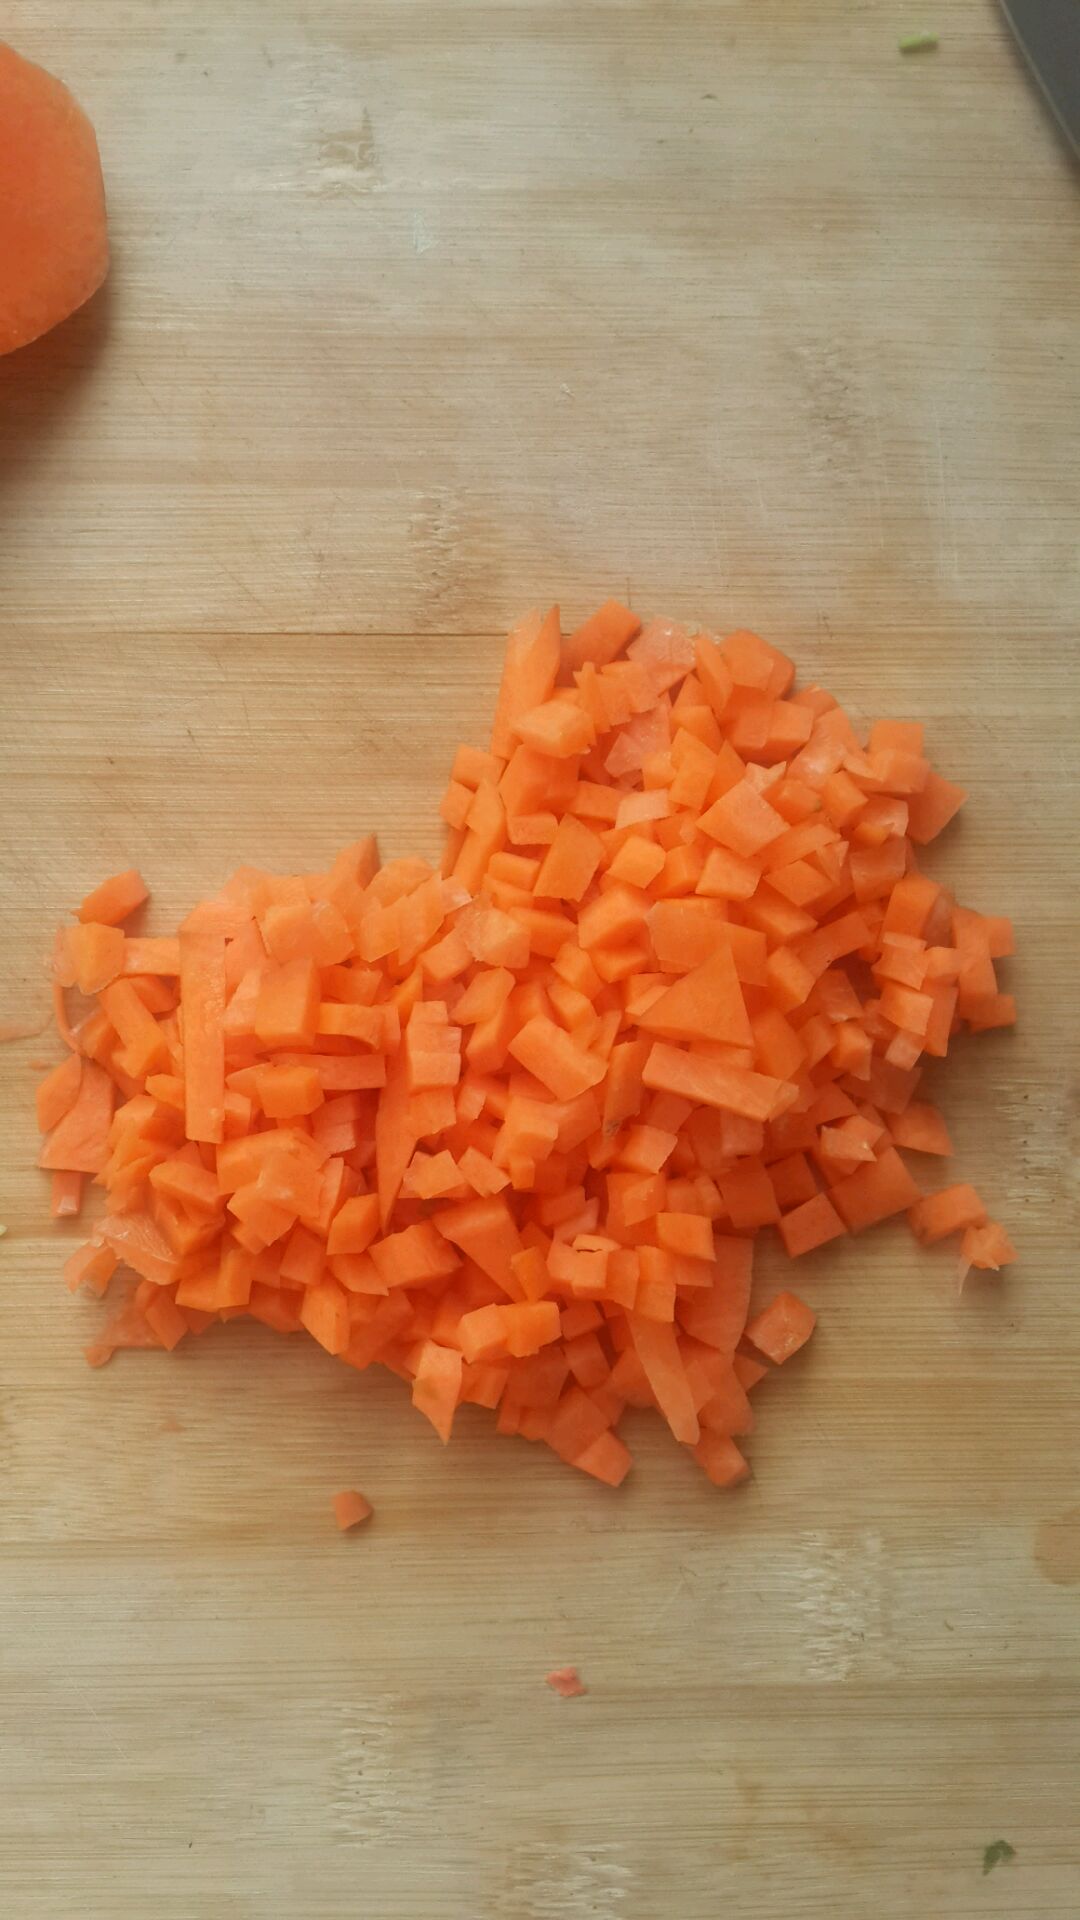 大厨教你胡萝卜的3种简单切法，一看就会，切出来整齐又好看_哔哩哔哩 (゜-゜)つロ 干杯~-bilibili